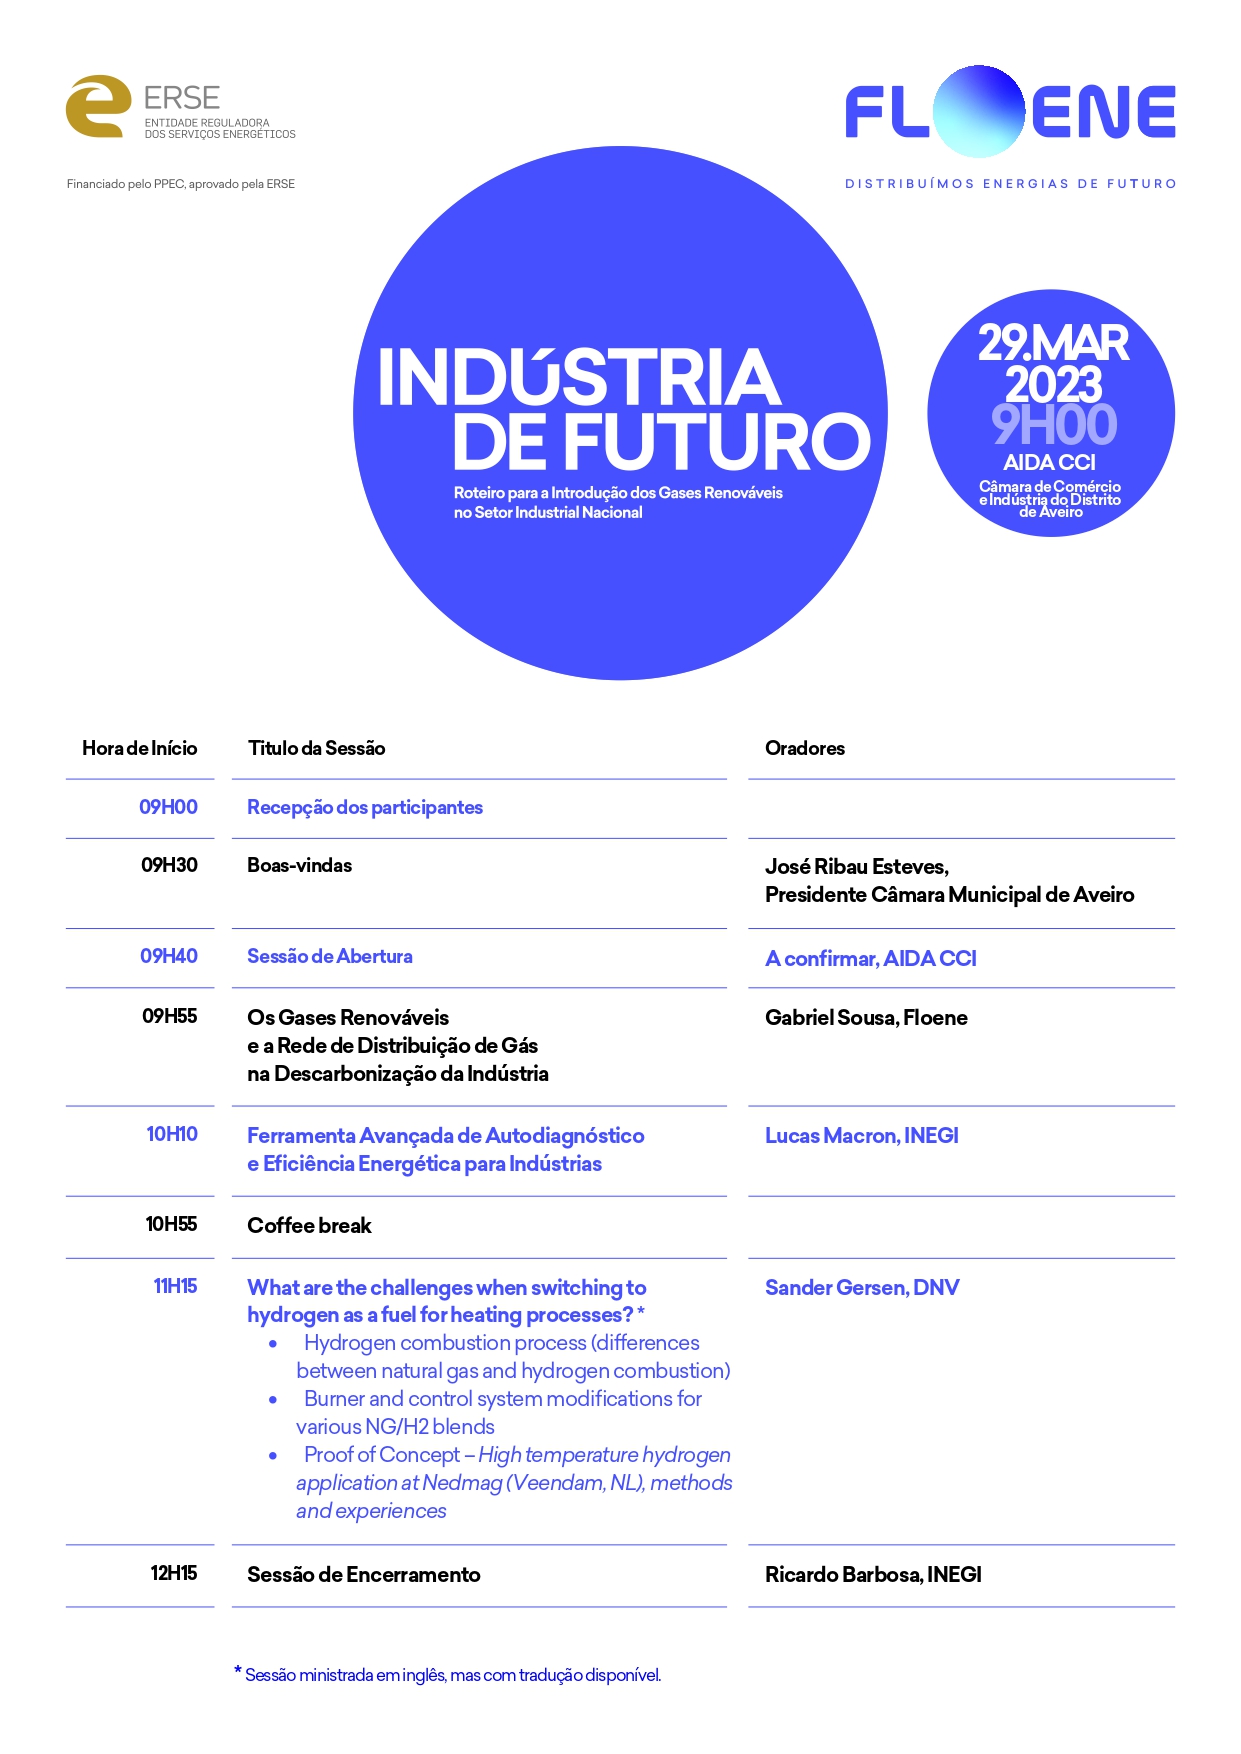 Agenda_2o_Workshop_Aveiro_Industria_de_Futuro__Floene.jpg